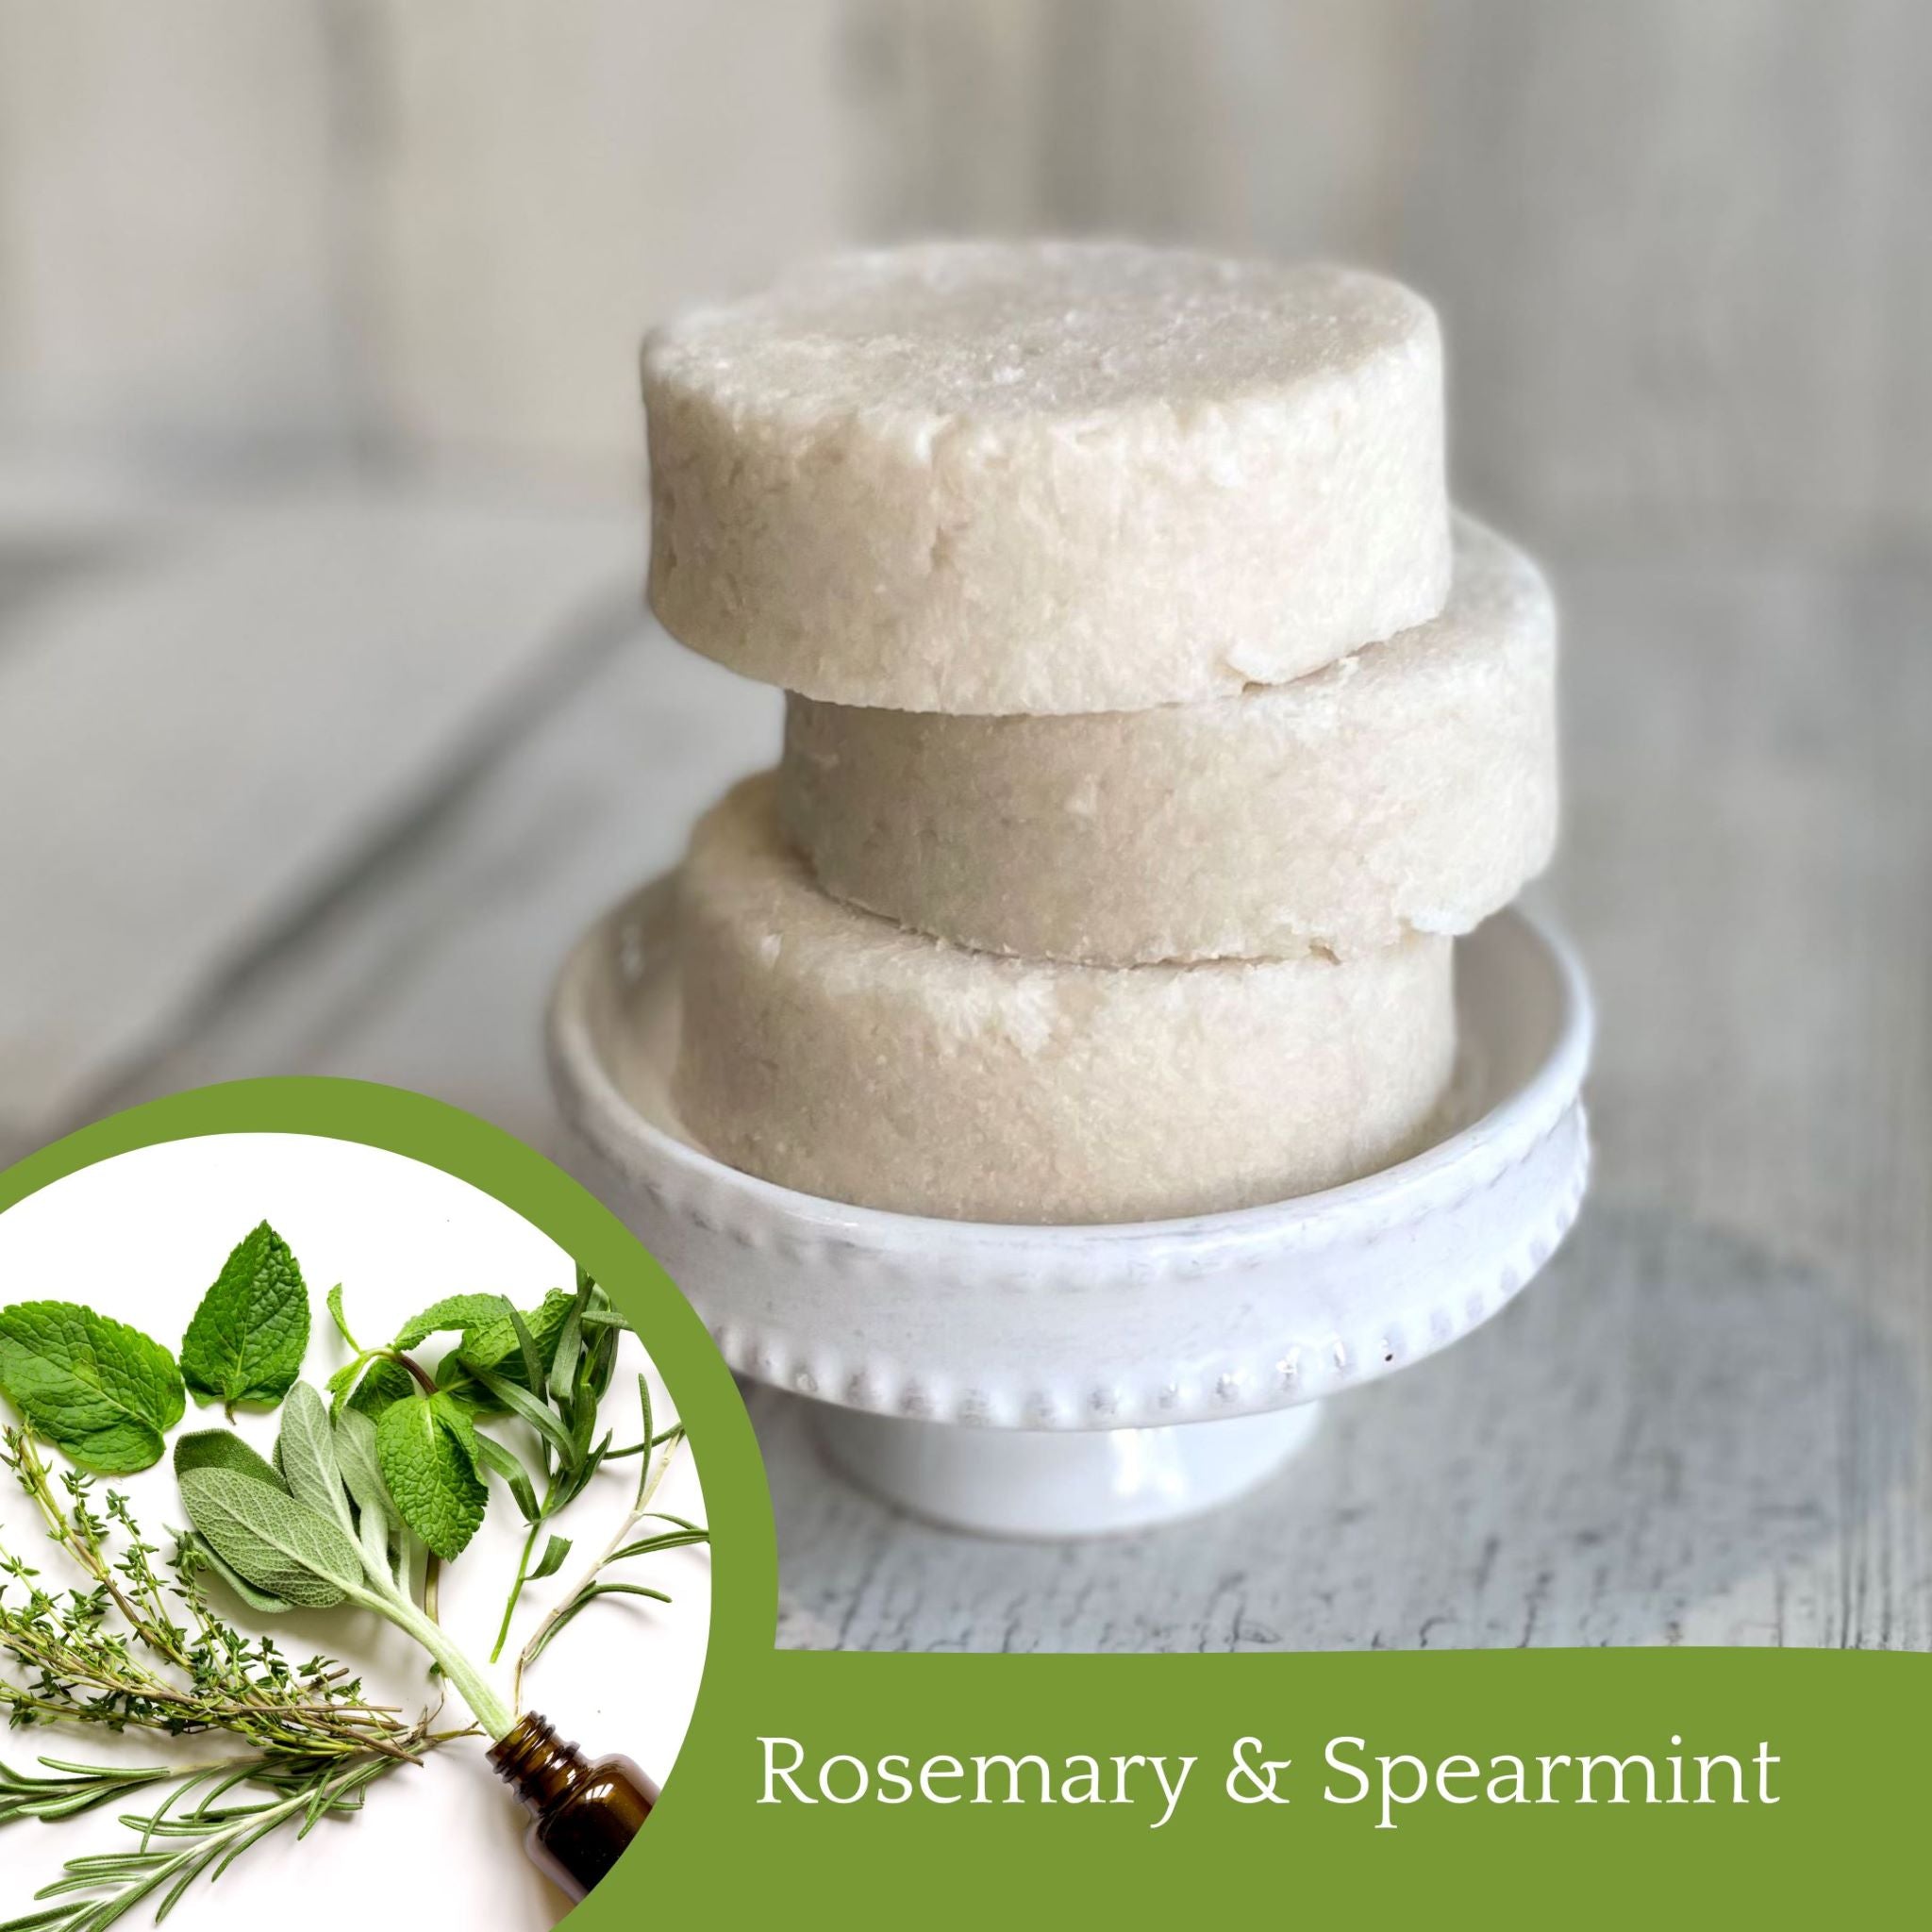 Rosemary & Spearmint Shampoo Bar